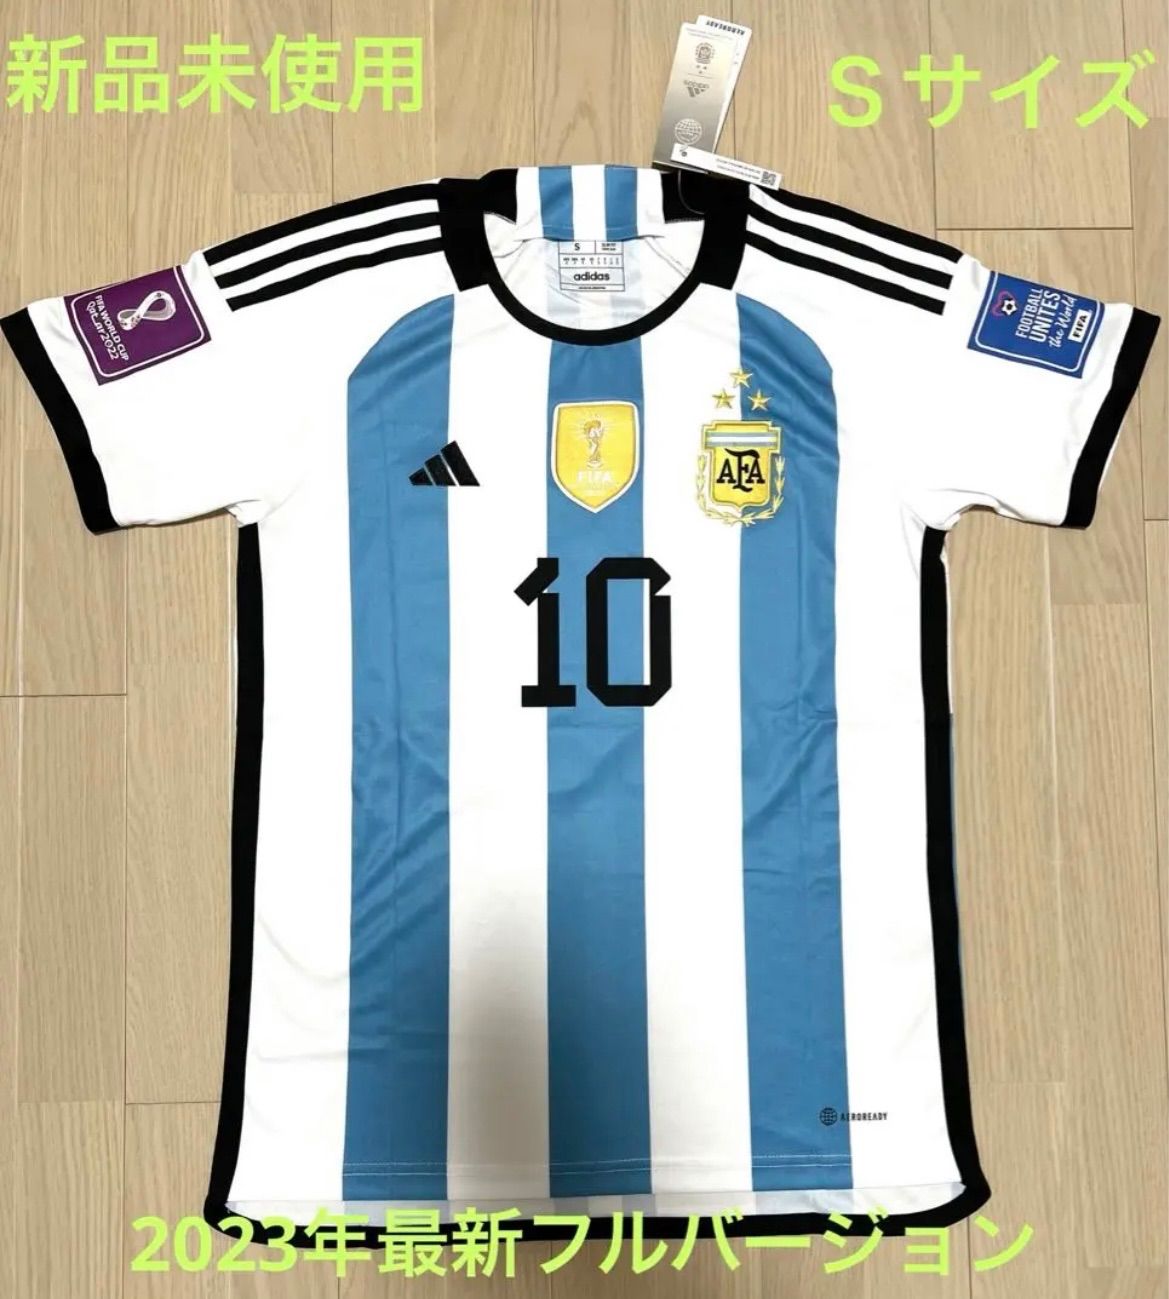 を販売限定 新品 未使用 アルゼンチン 代表 ユニフォーム 2枚組 1978 2010 ワールドカップ オーセンティック Authentic アディダス 日本サイズO レプリカ、オーセンティック